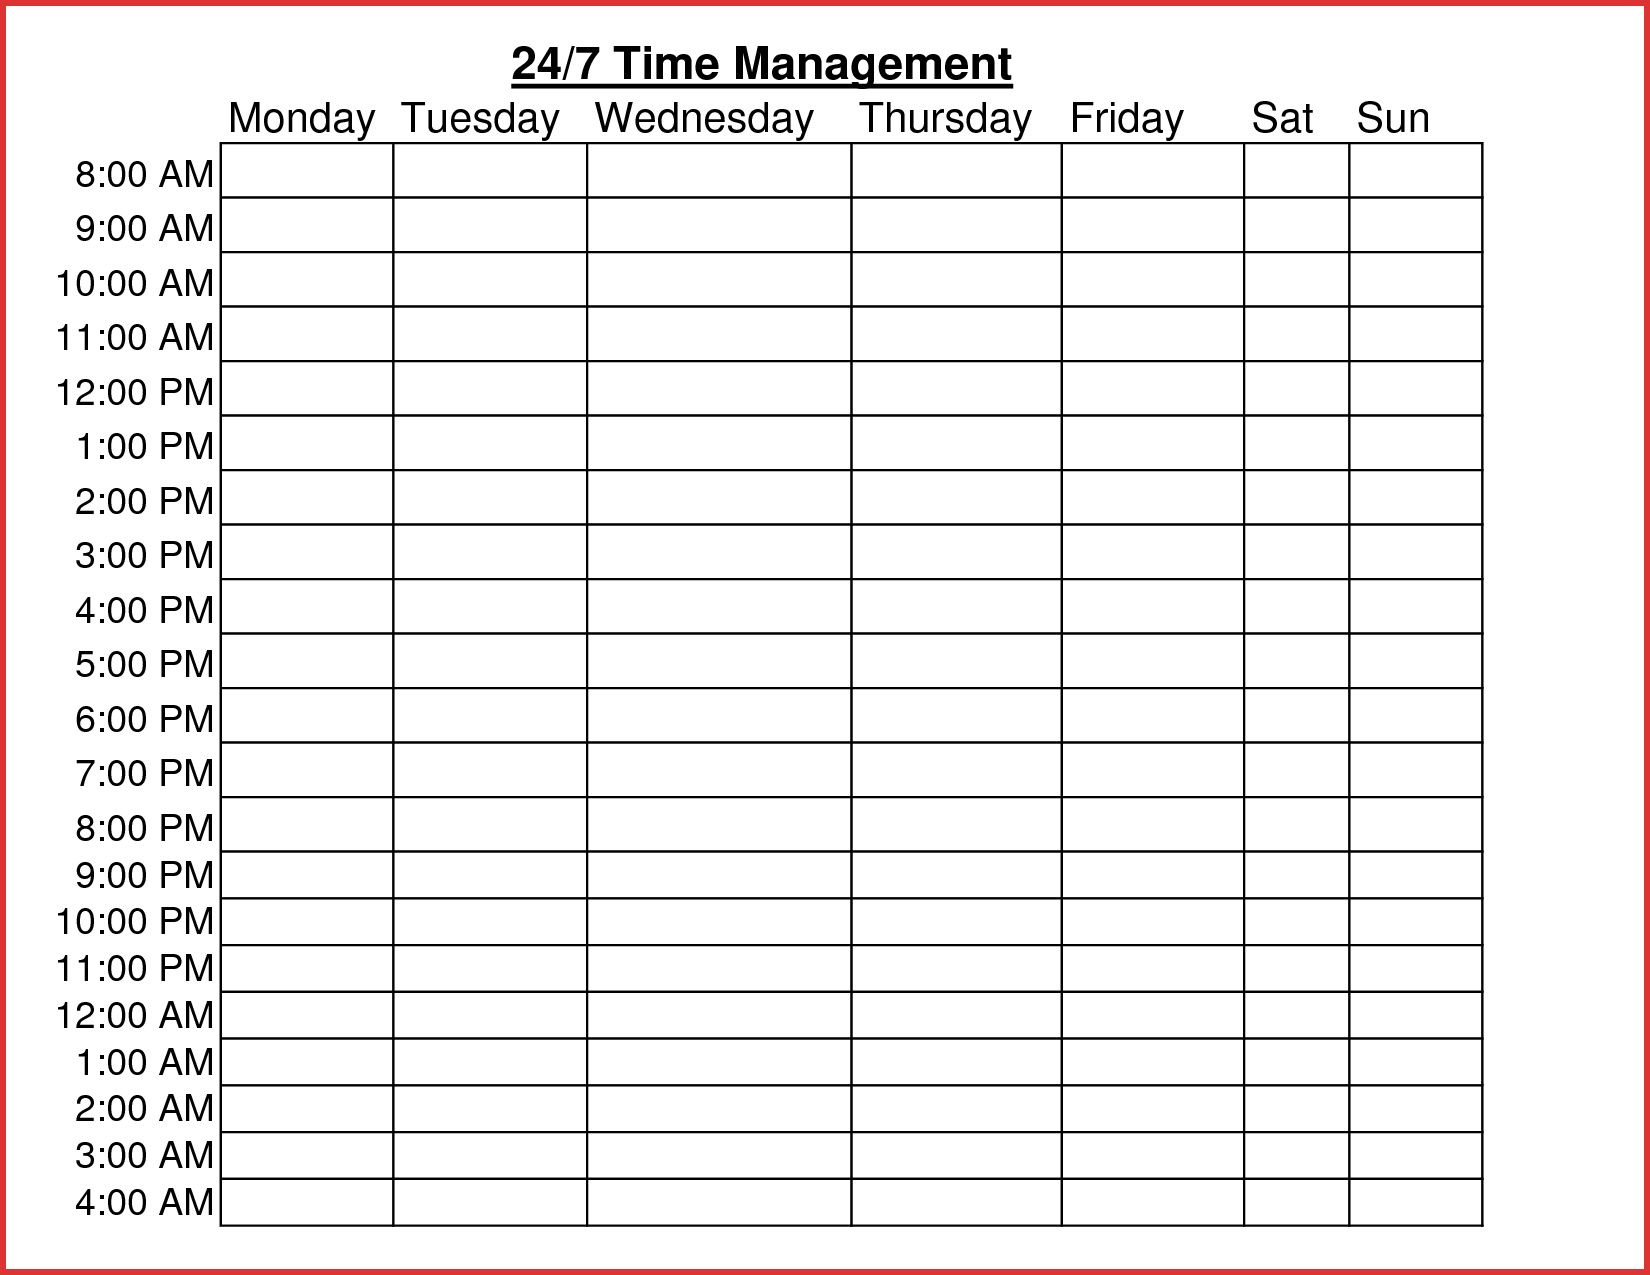 Volunteer Schedule Spreadsheet Google Spreadshee volunteer schedule spreadsheet.1650 x 1275